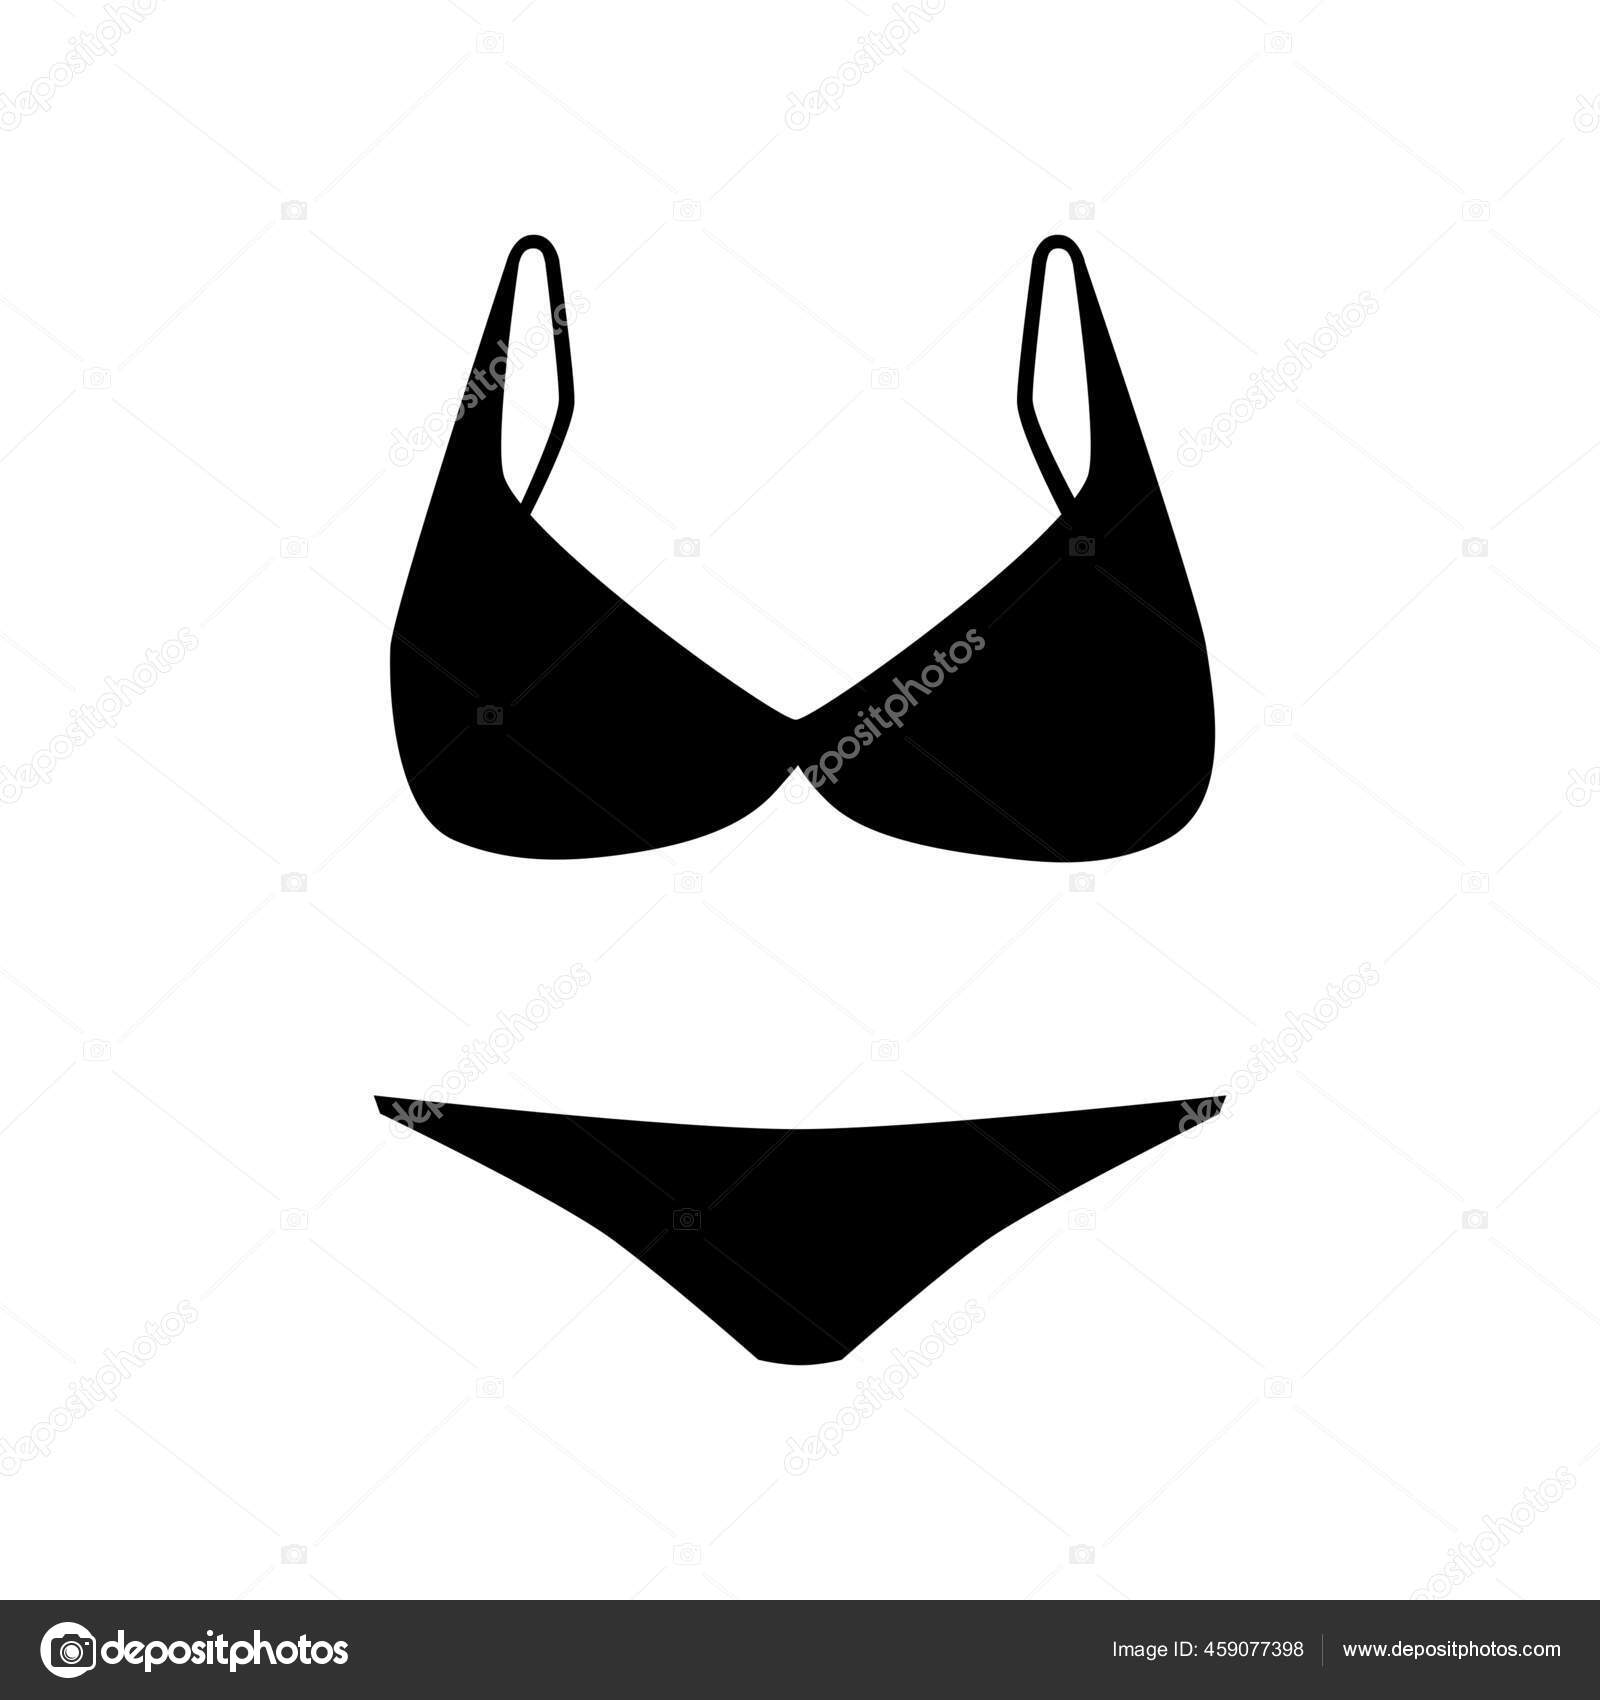 Bikini, bra, brassiere, lingerie, swimming bra, underclothes, undergarment  icon - Download on Iconfinder